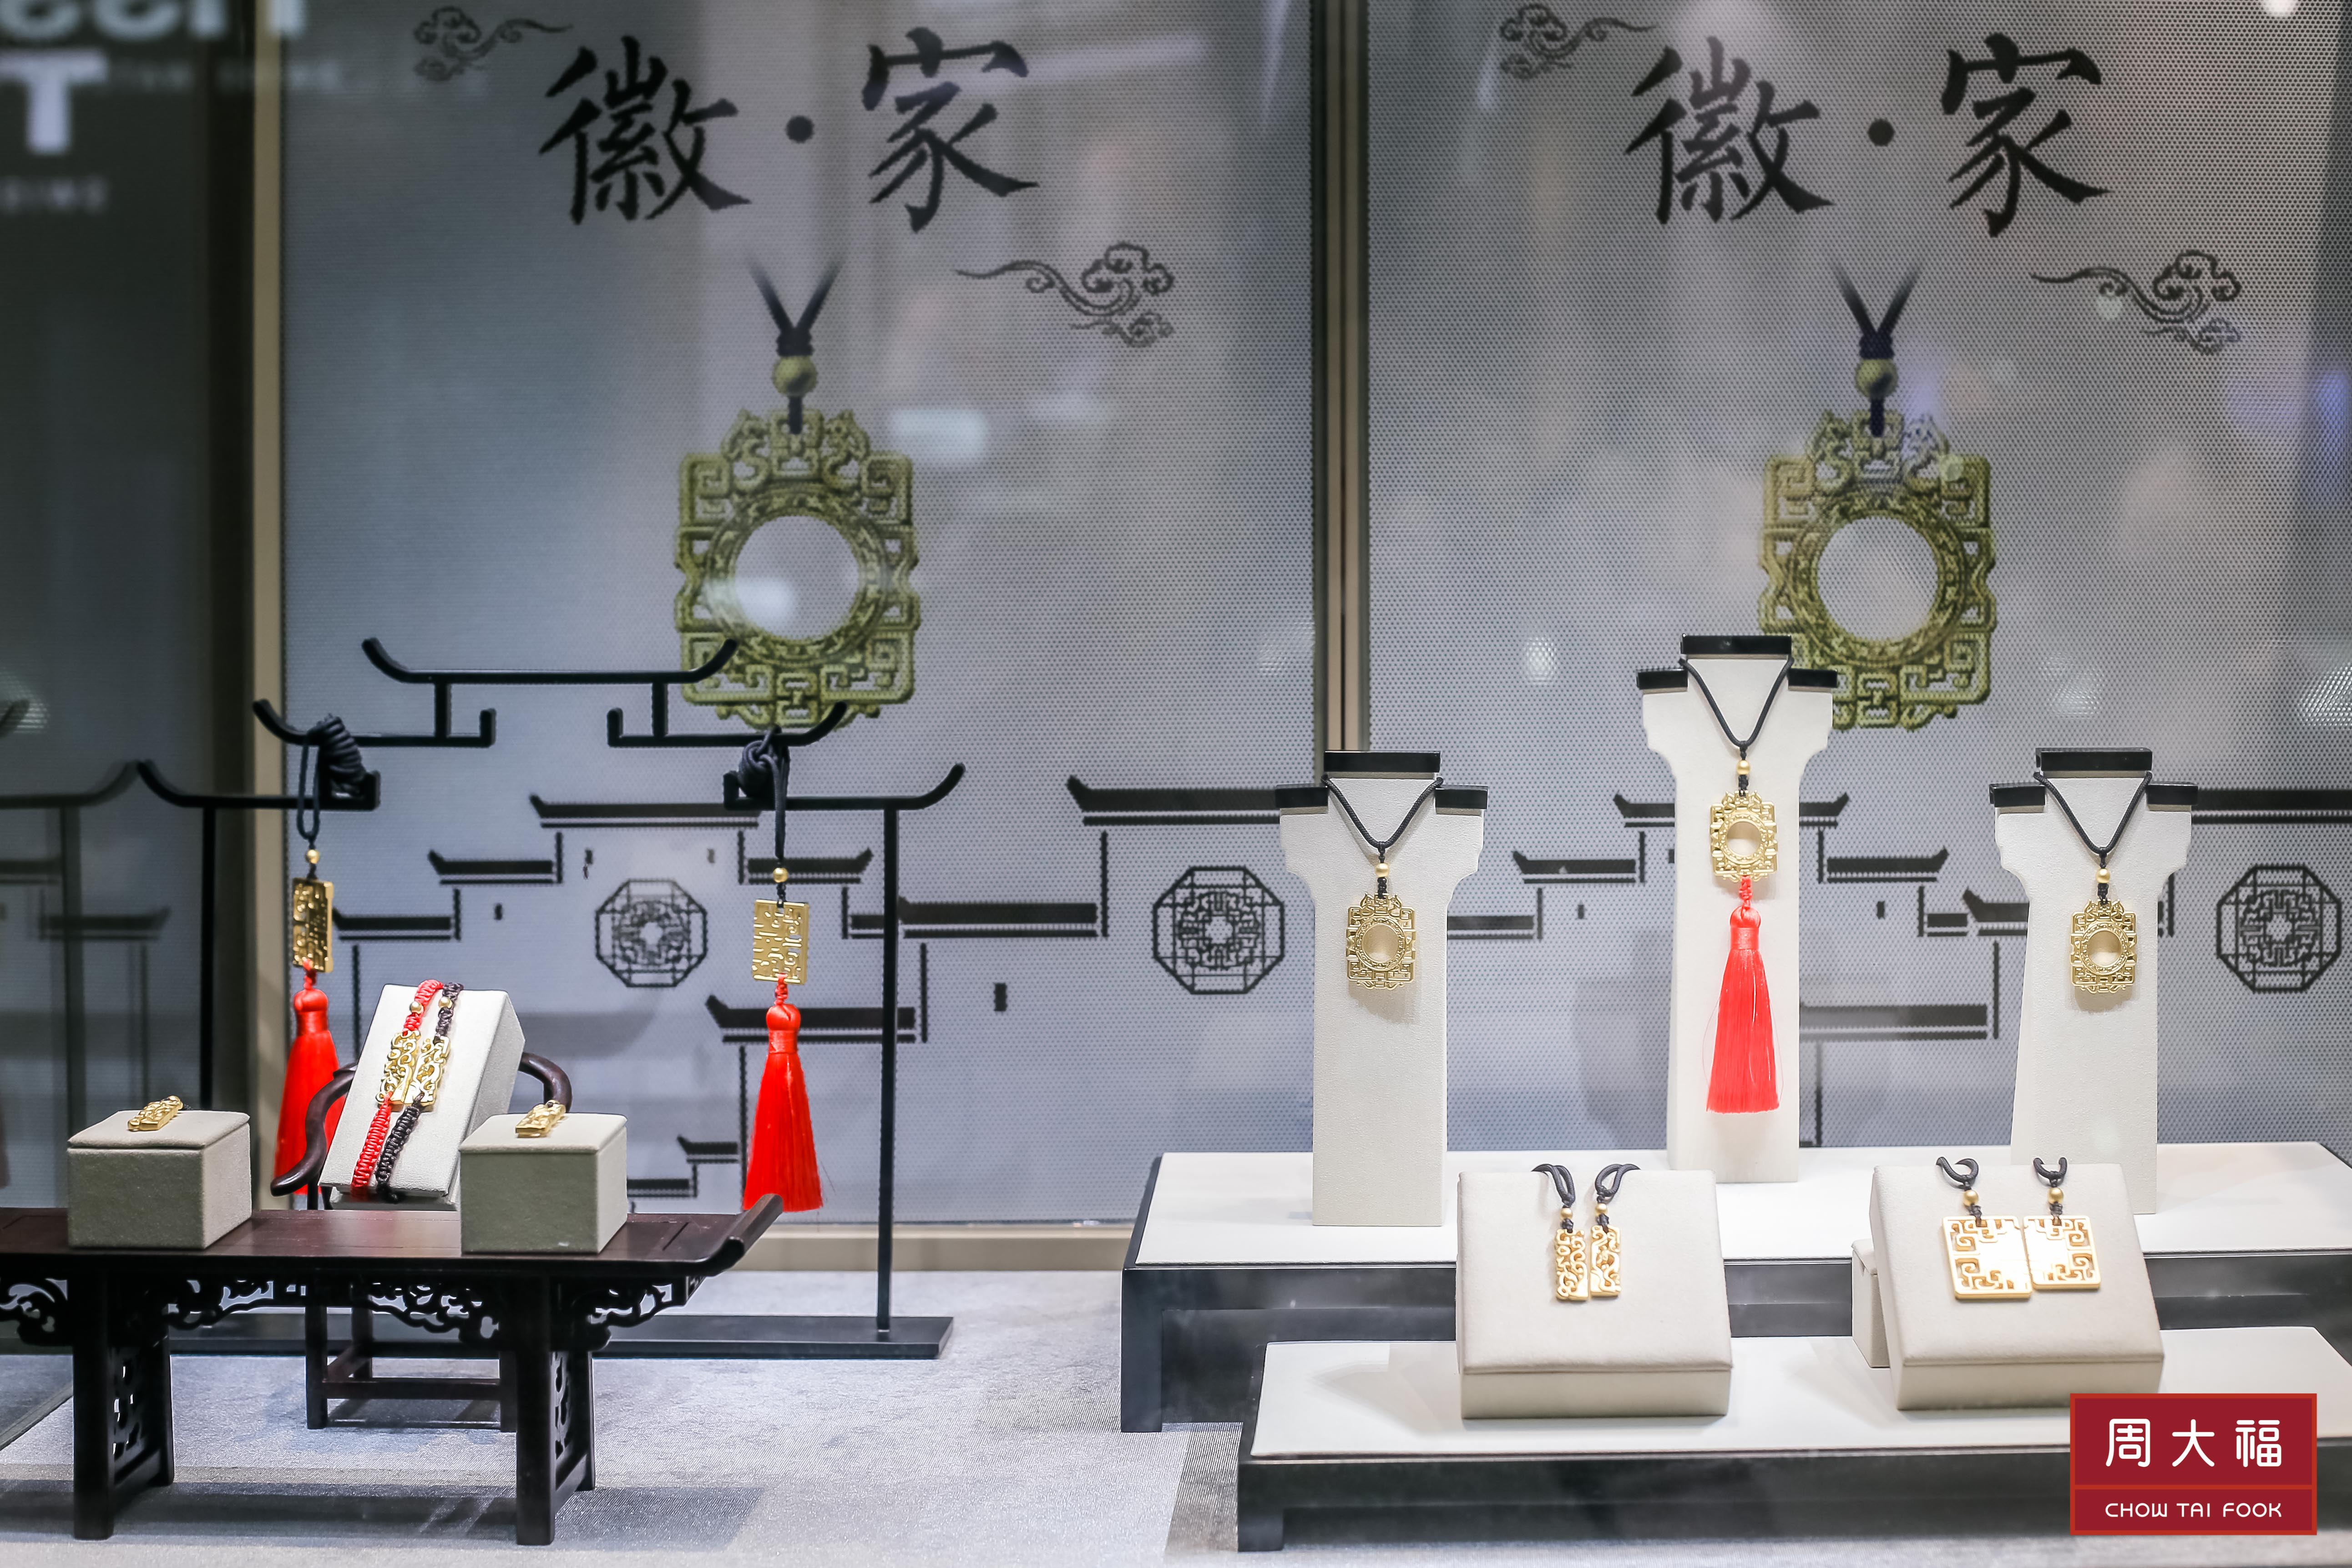 周大福珠宝集团结合安徽文化元素推出"徽家"系列,用匠心工艺弘扬地方